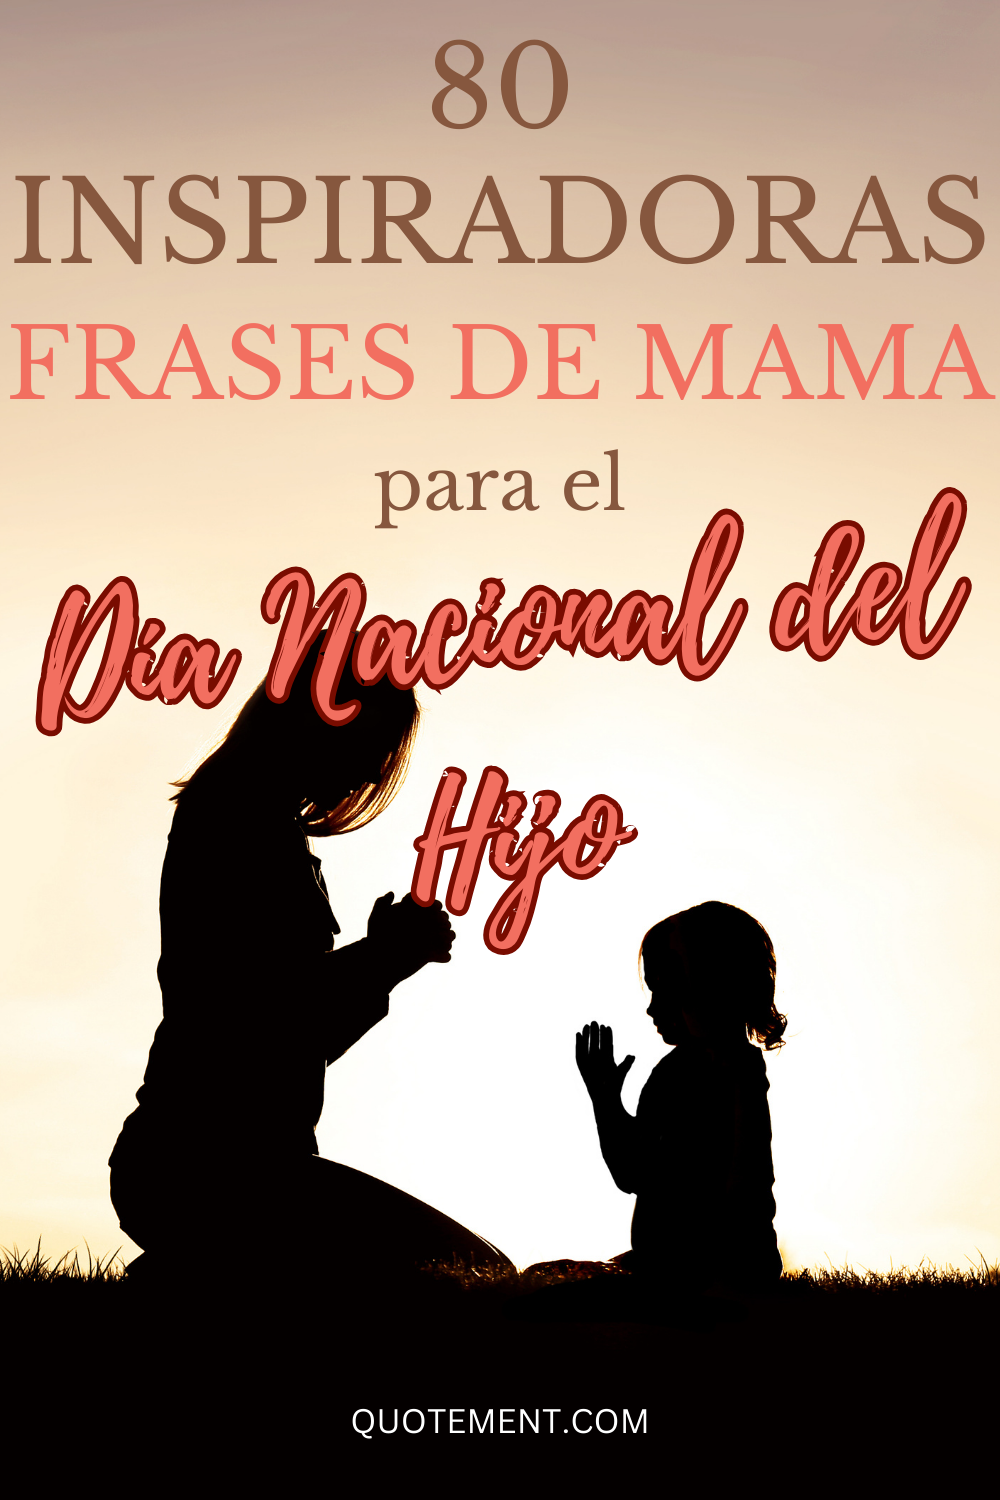 80 frases de mamá para el Día Nacional del Hijo para compartir tu amor